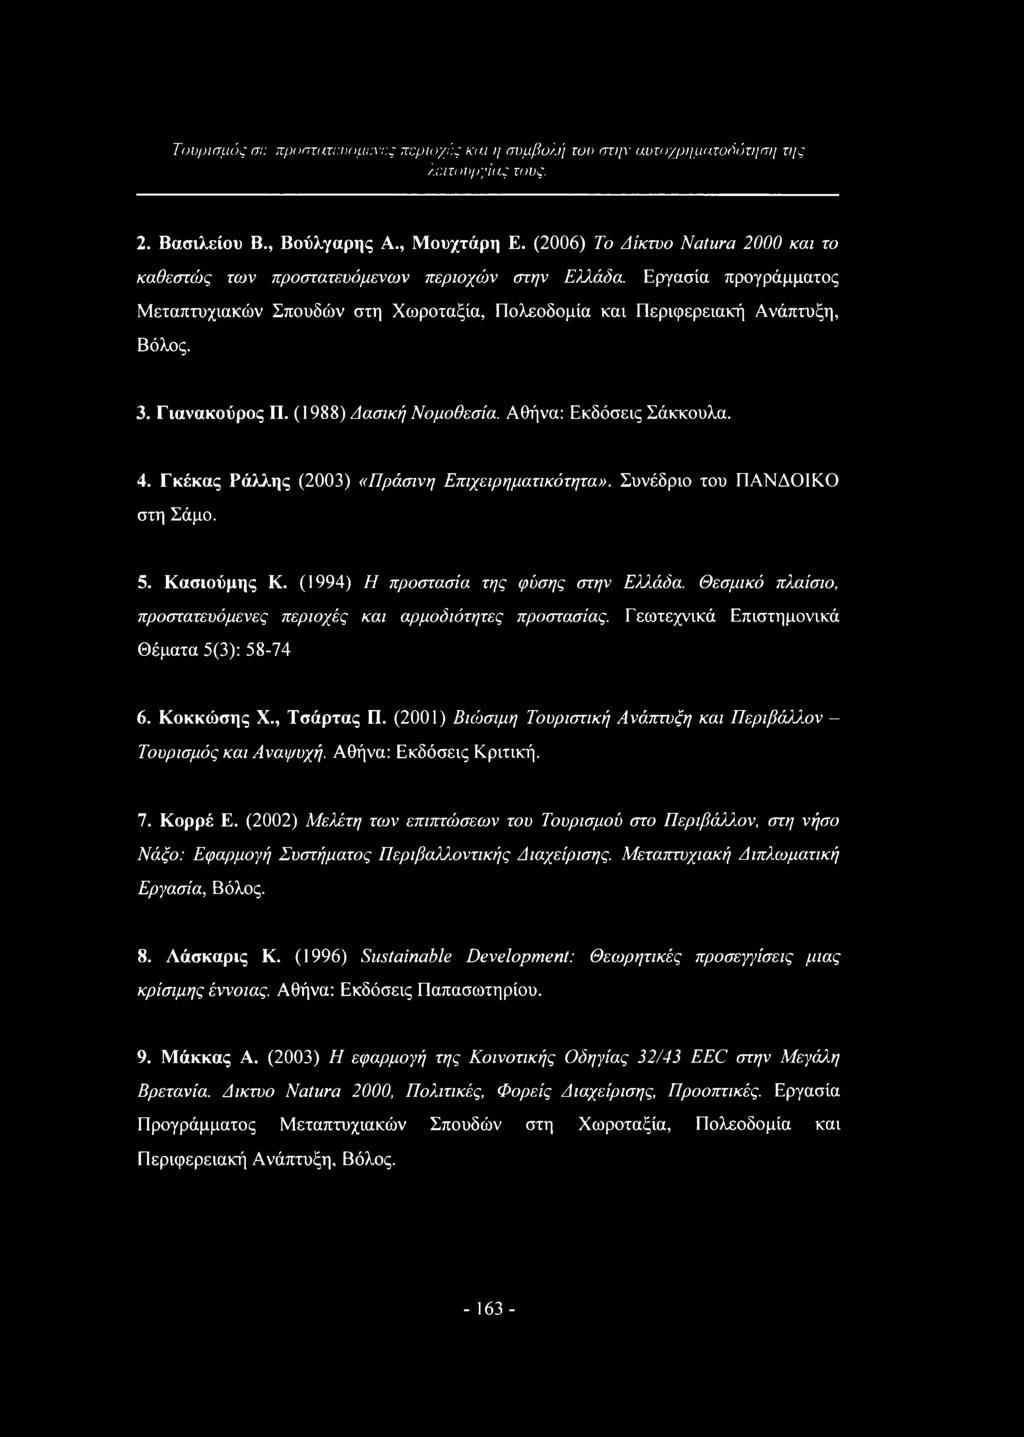 Γιανακούρος Π. (1988) Δασική Νομοθεσία. Αθήνα: Εκδόσεις Σάκκουλα. 4. Γκέκας Ράλλης (2003) «Πράσινη Επιχειρηματικότητα». Συνέδριο του ΠΑΝΔΟΙΚΟ στη Σάμο. 5. Κασιούμης Κ.